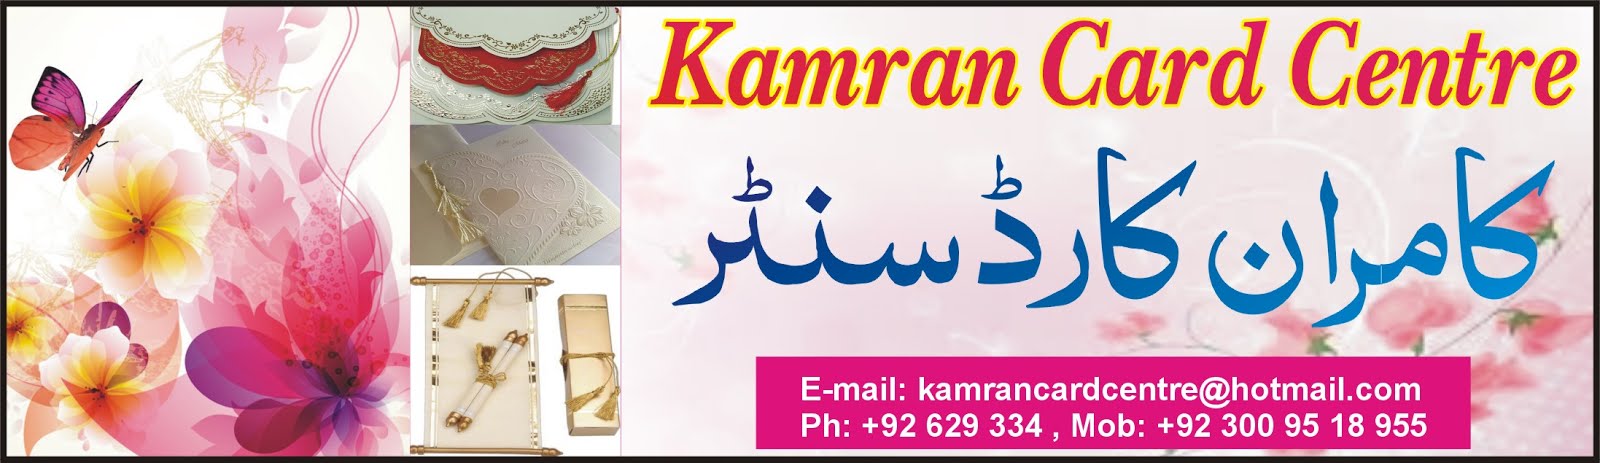 Kamran Card Centre